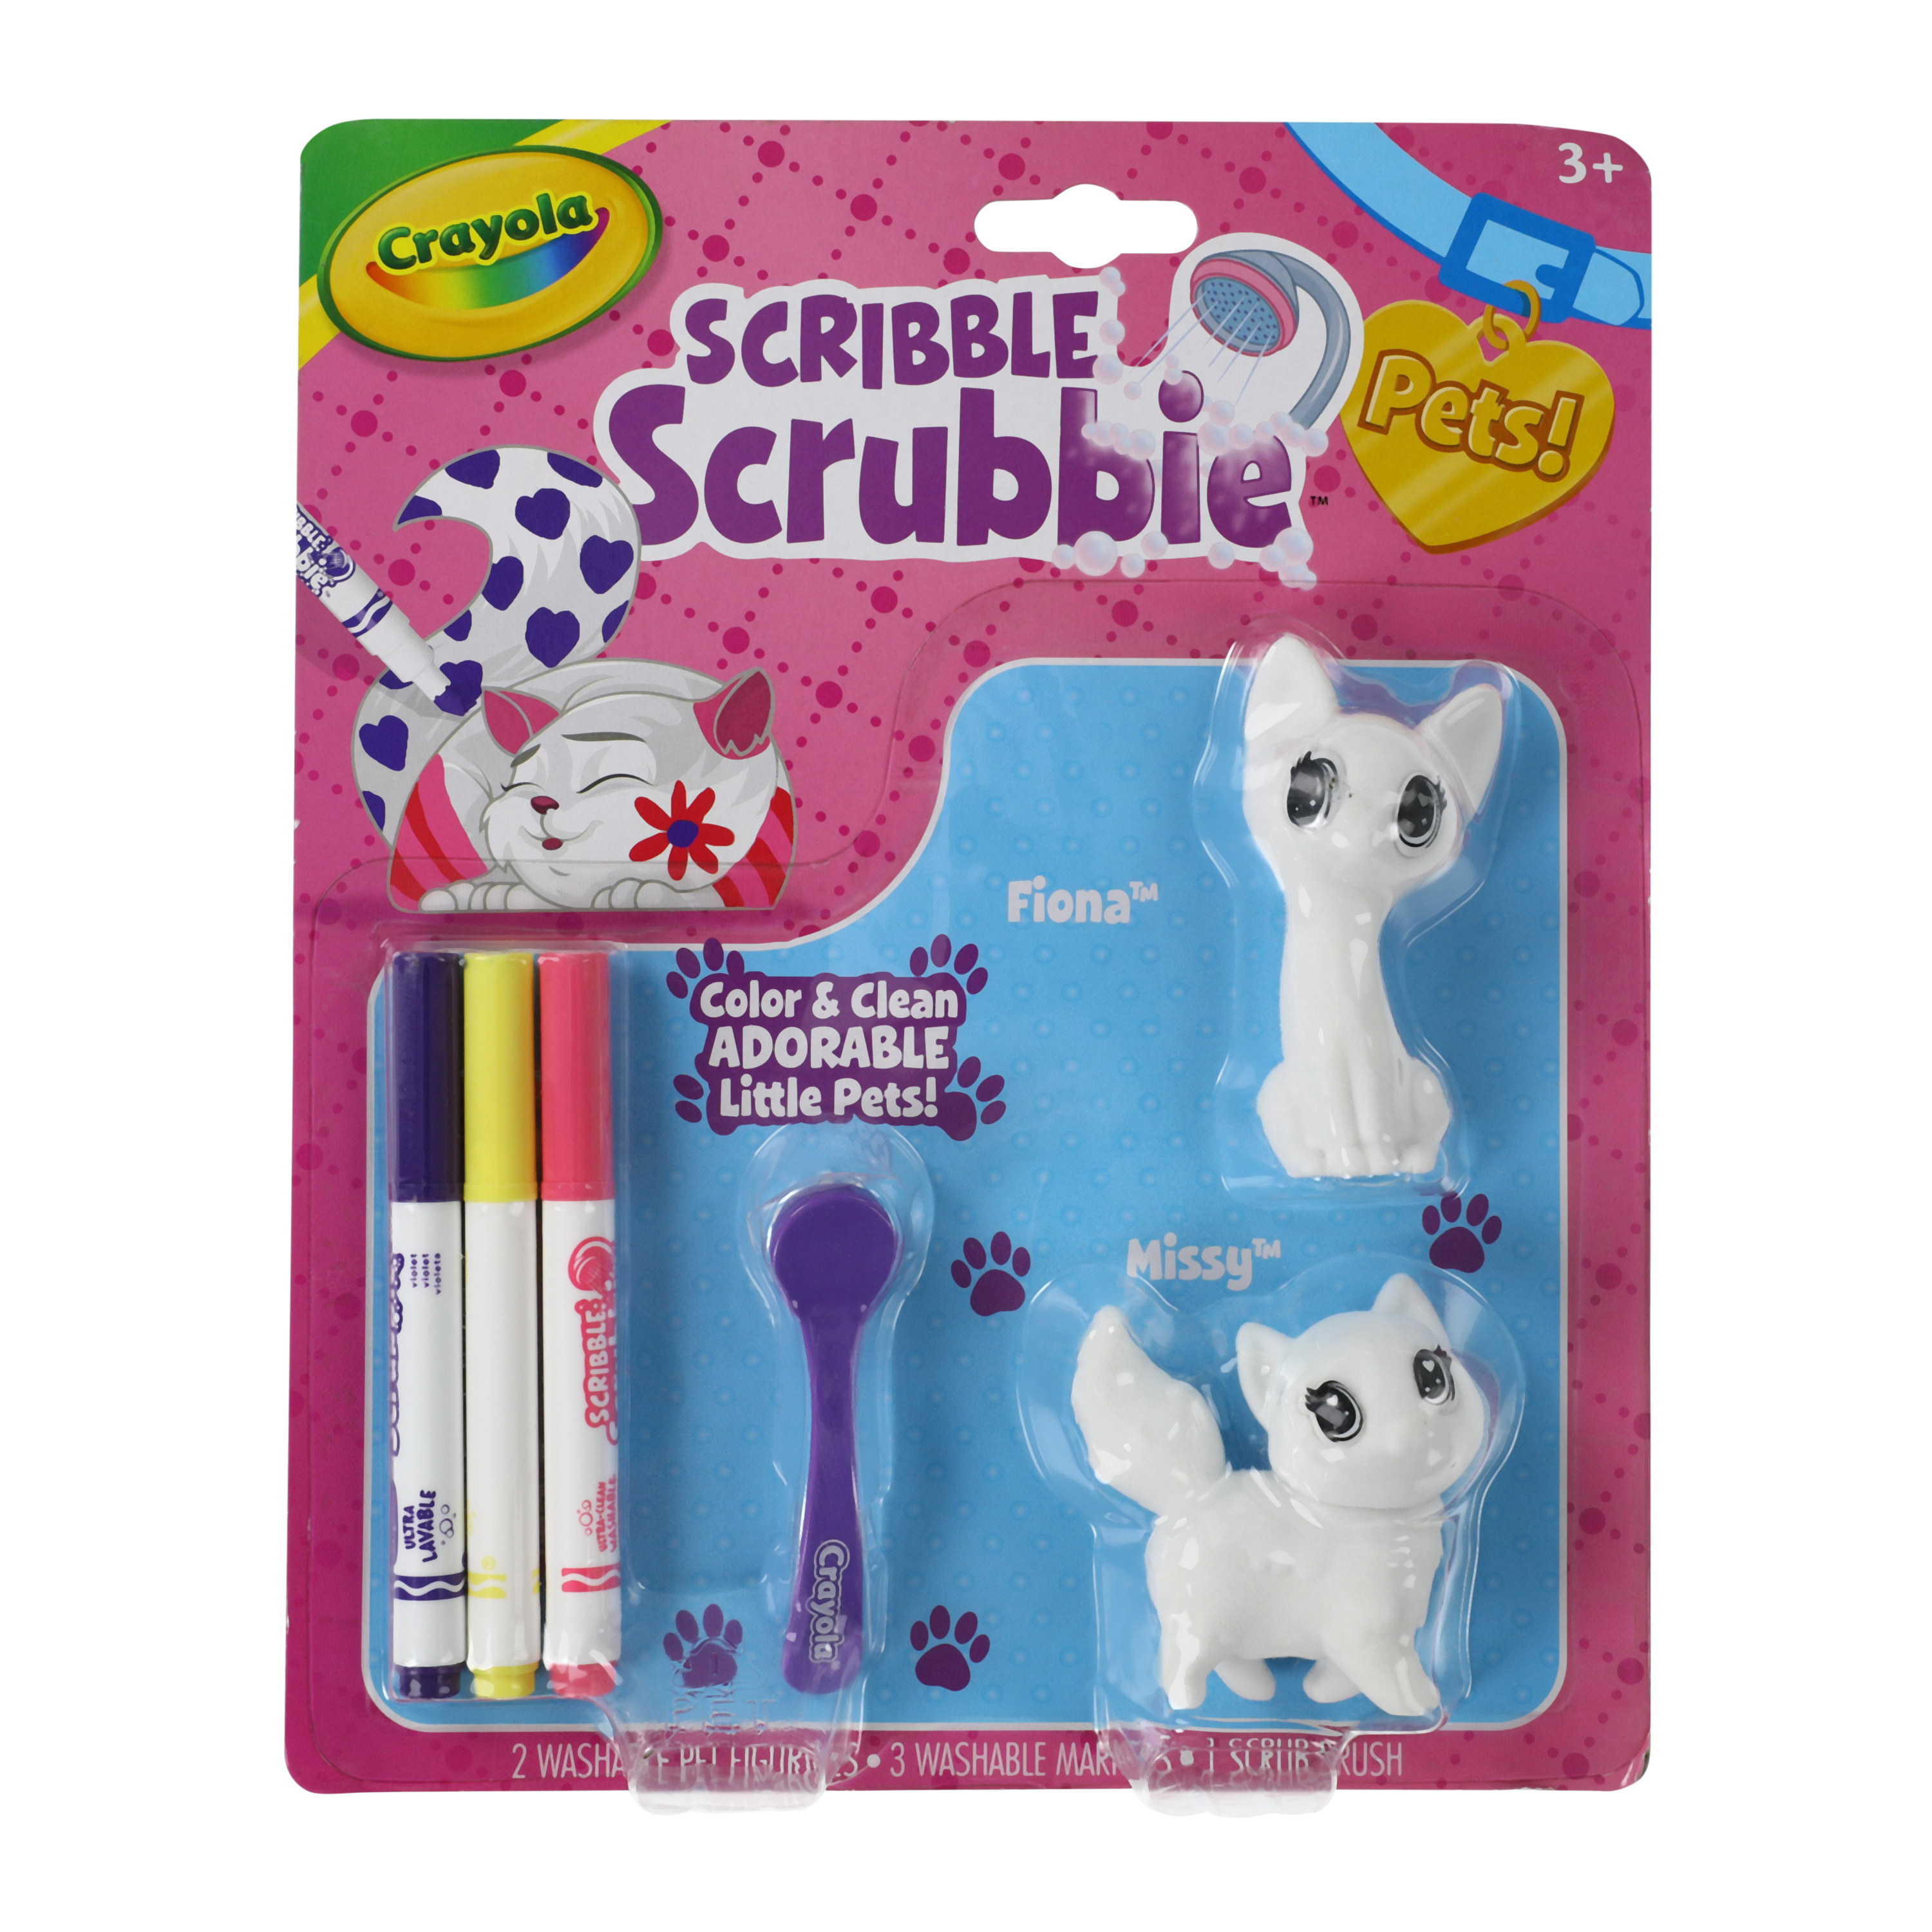 Crayola® Scribble Scrubbie™ Pets!